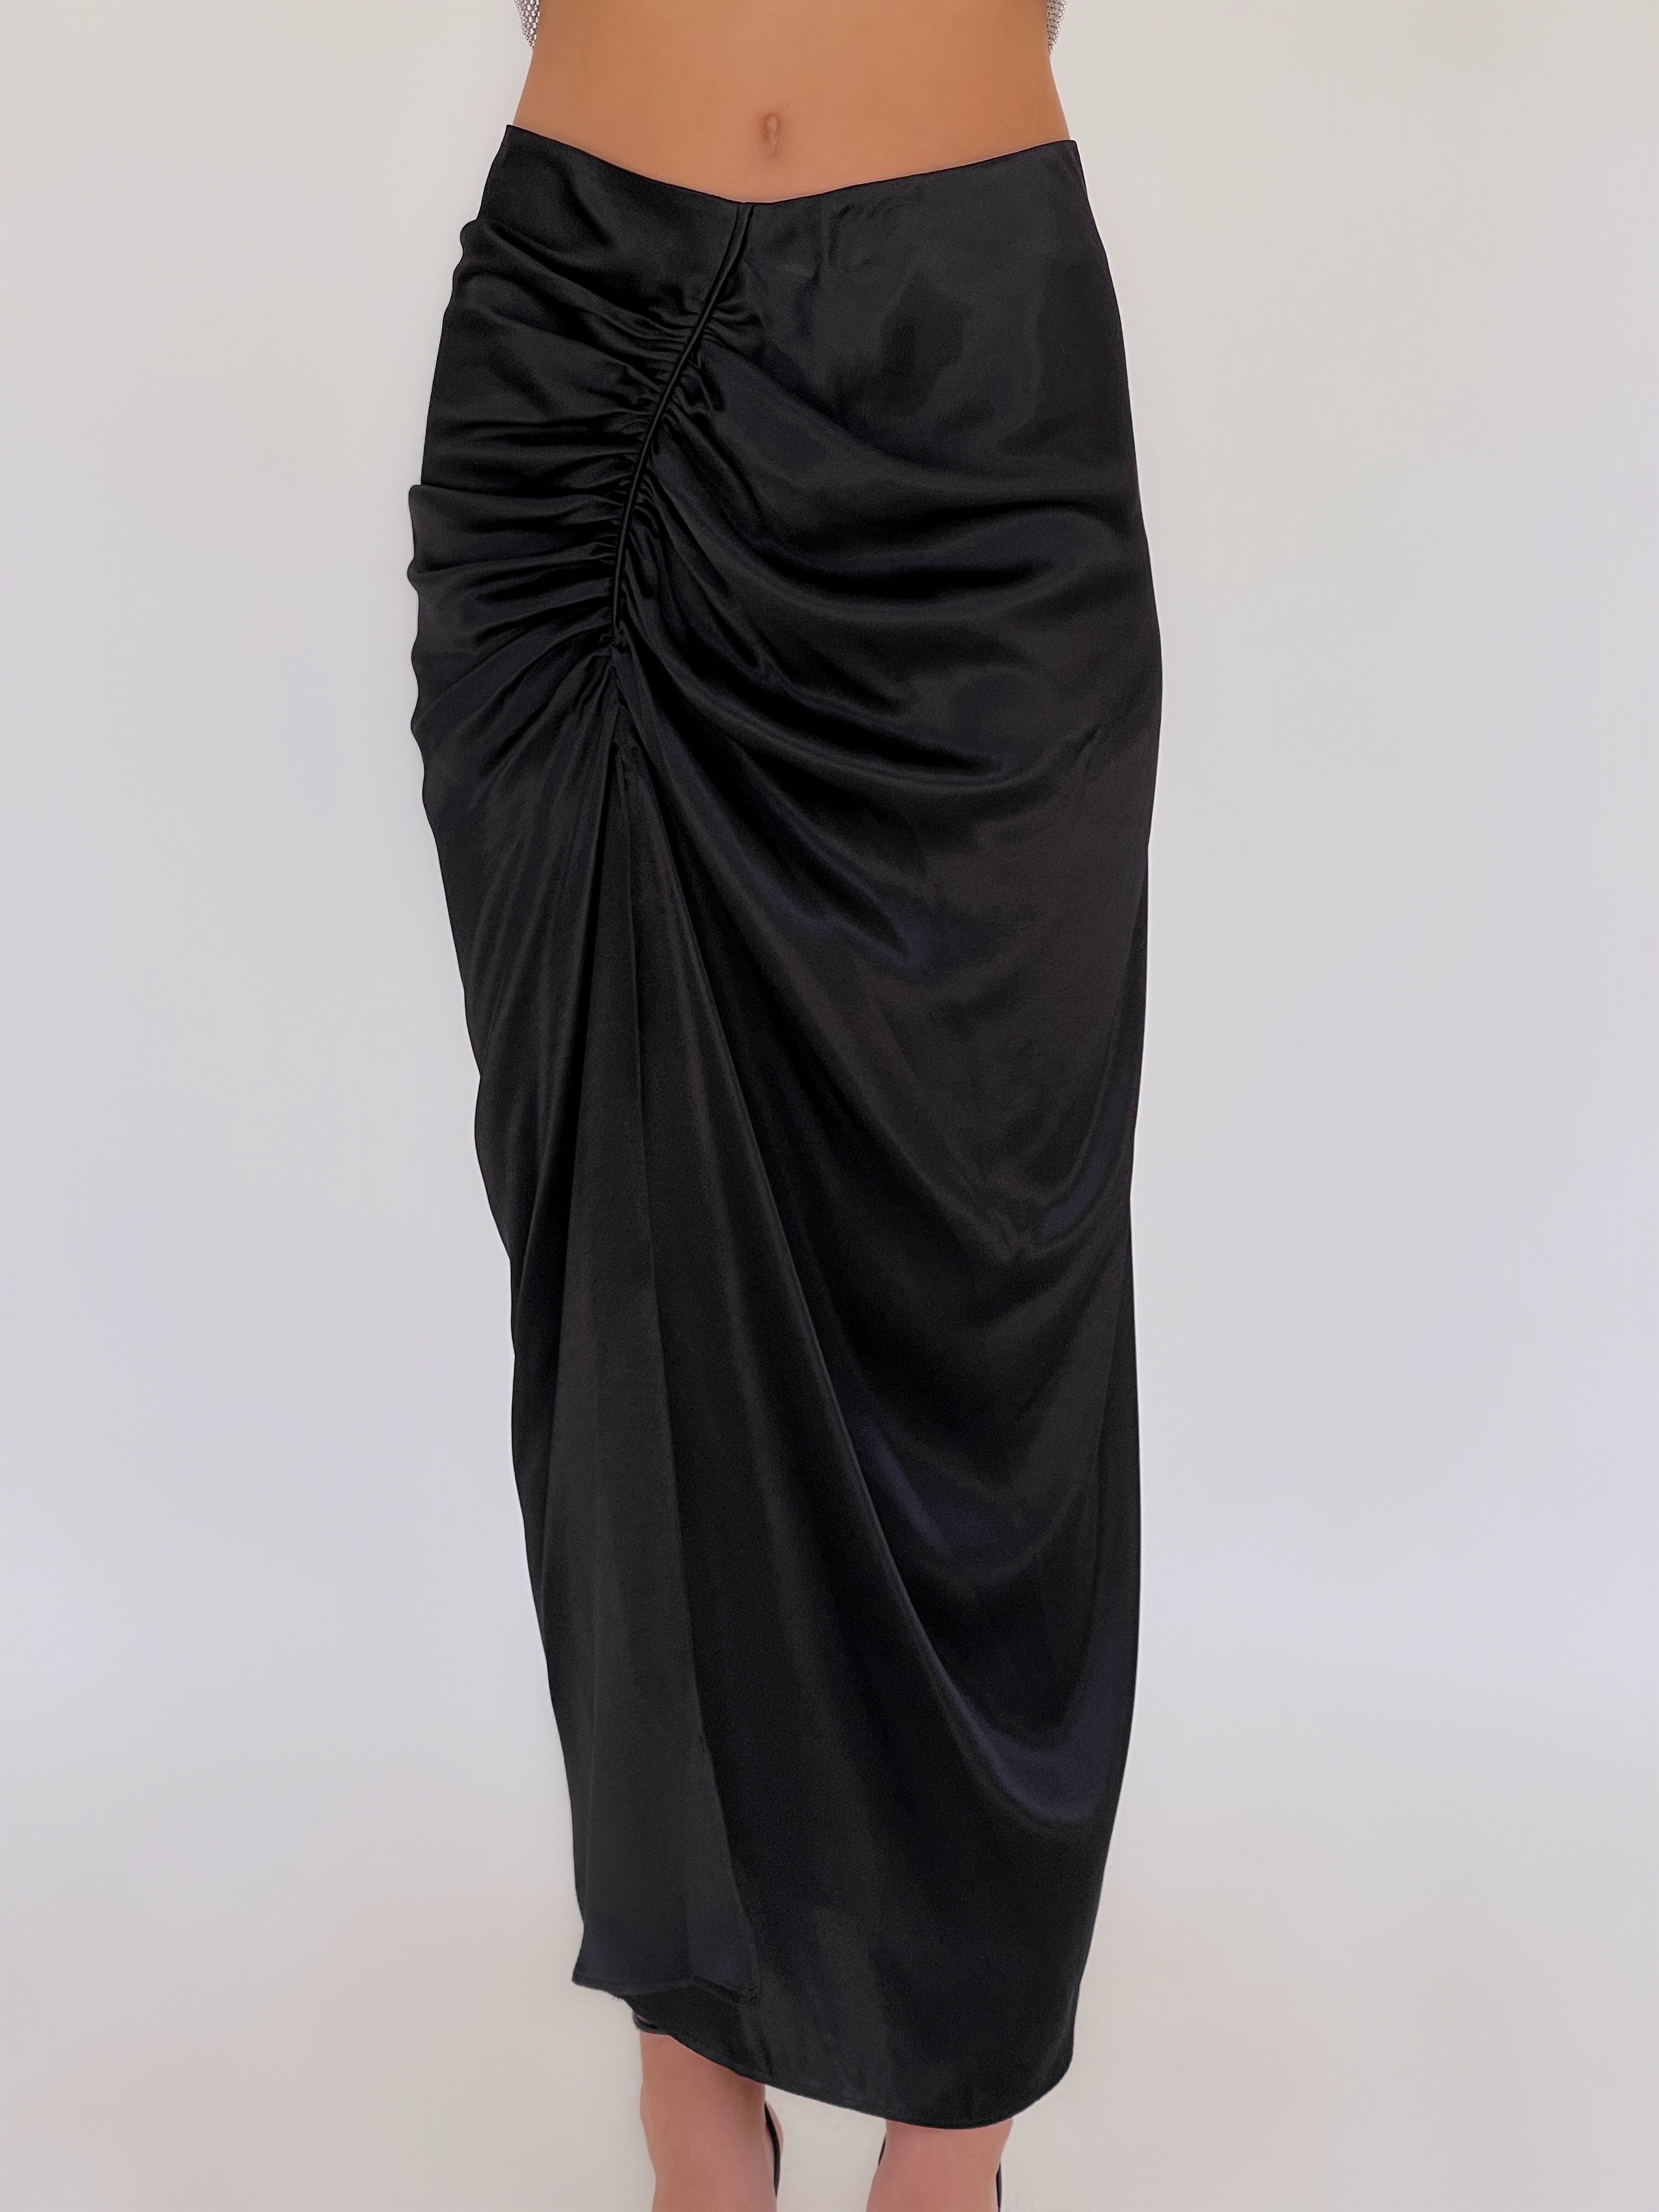 חצאית סאטן עם שסע בצבע שחור